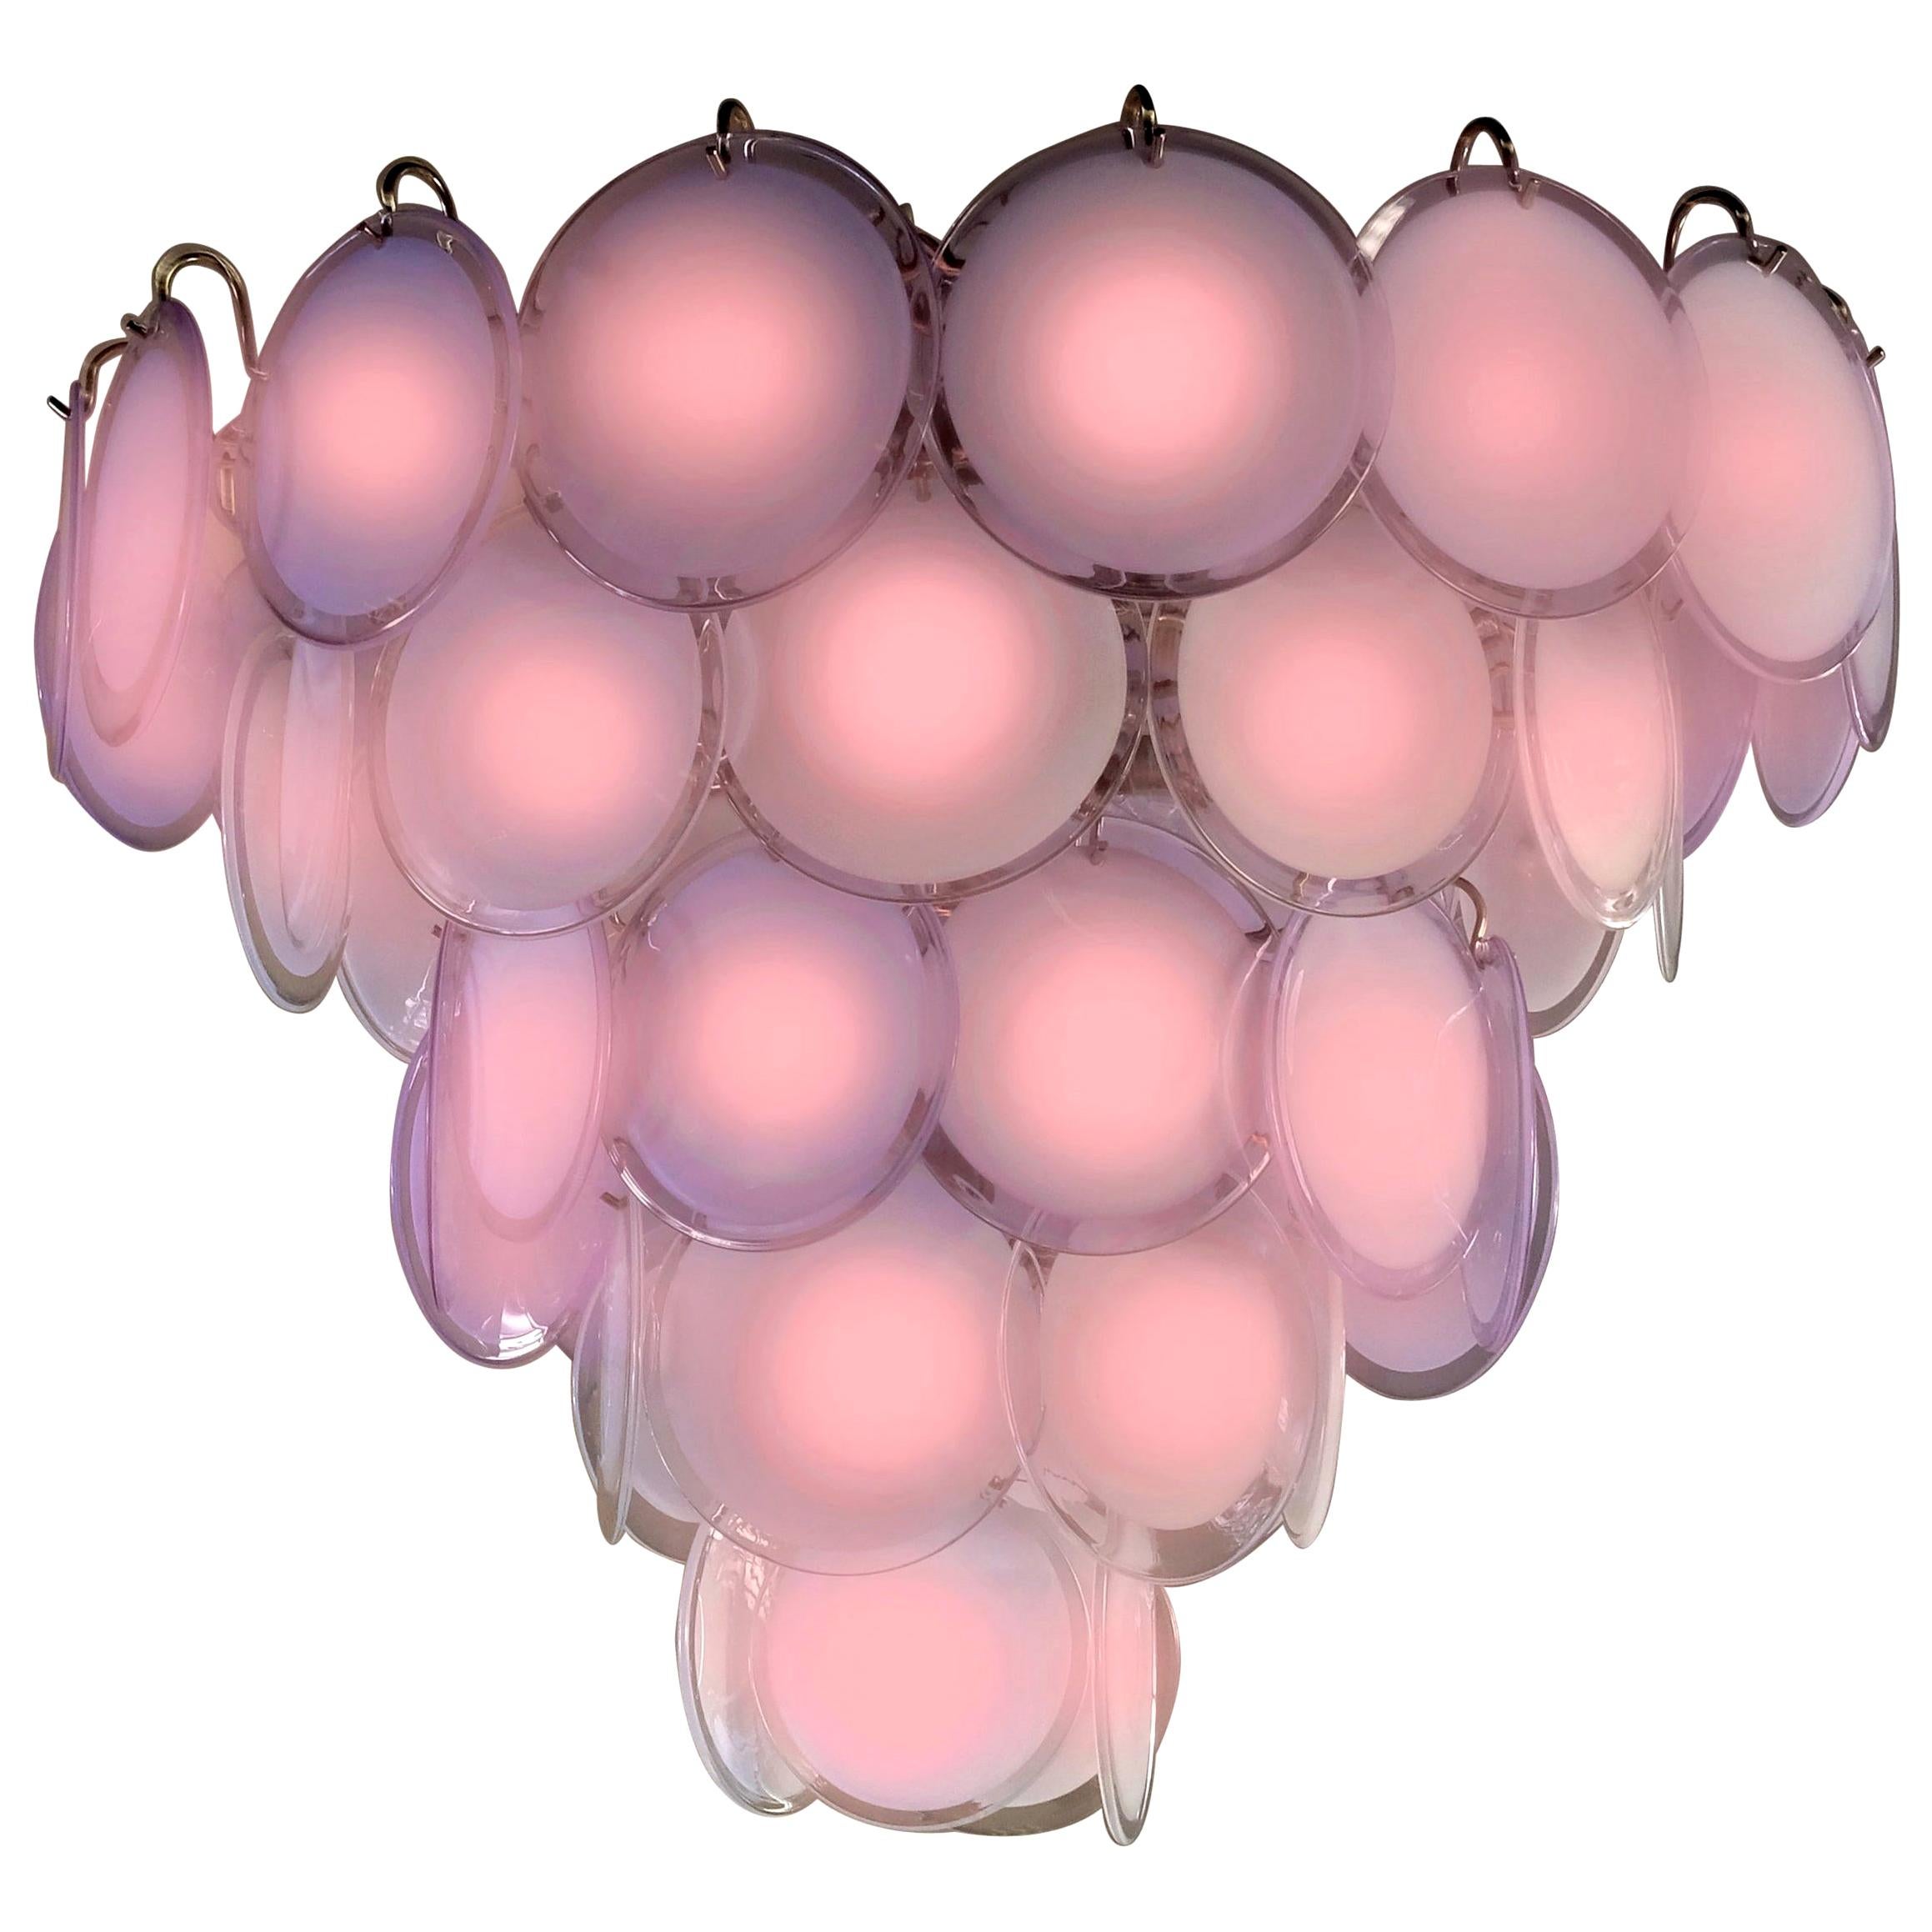 Spektakulärer Kronleuchter von Vistosi aus 50 rosafarbenen Muranoglasscheiben.
16 Glühbirnen E 14. Wir können die Verkabelung an die Normen Ihres Landes anpassen.
Erhältlich auch ein Paar kleine 24-Scheiben-Kronleuchter und vier Paar Wandleuchten.